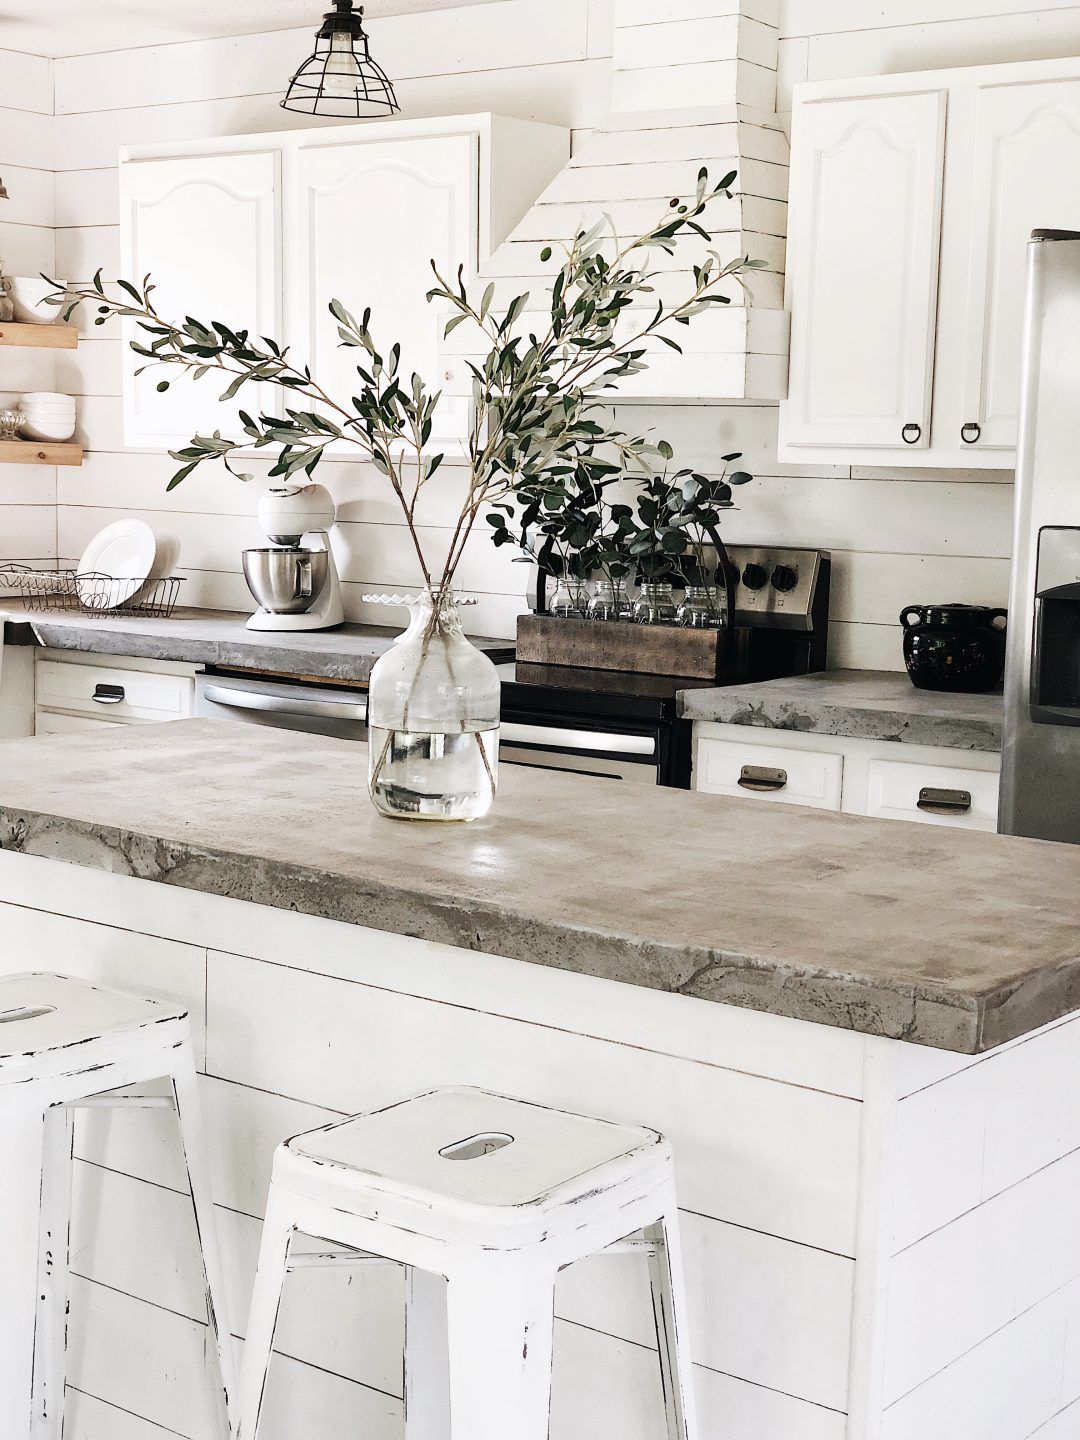 Phòng bếp thiết kế theo vintage cổ điển với tông màu trắng chủ đạo, những vết xước trên ghế ngồi kết hợp mặt bàn bê tông tạo nên nét cổ điển trầm lắng.